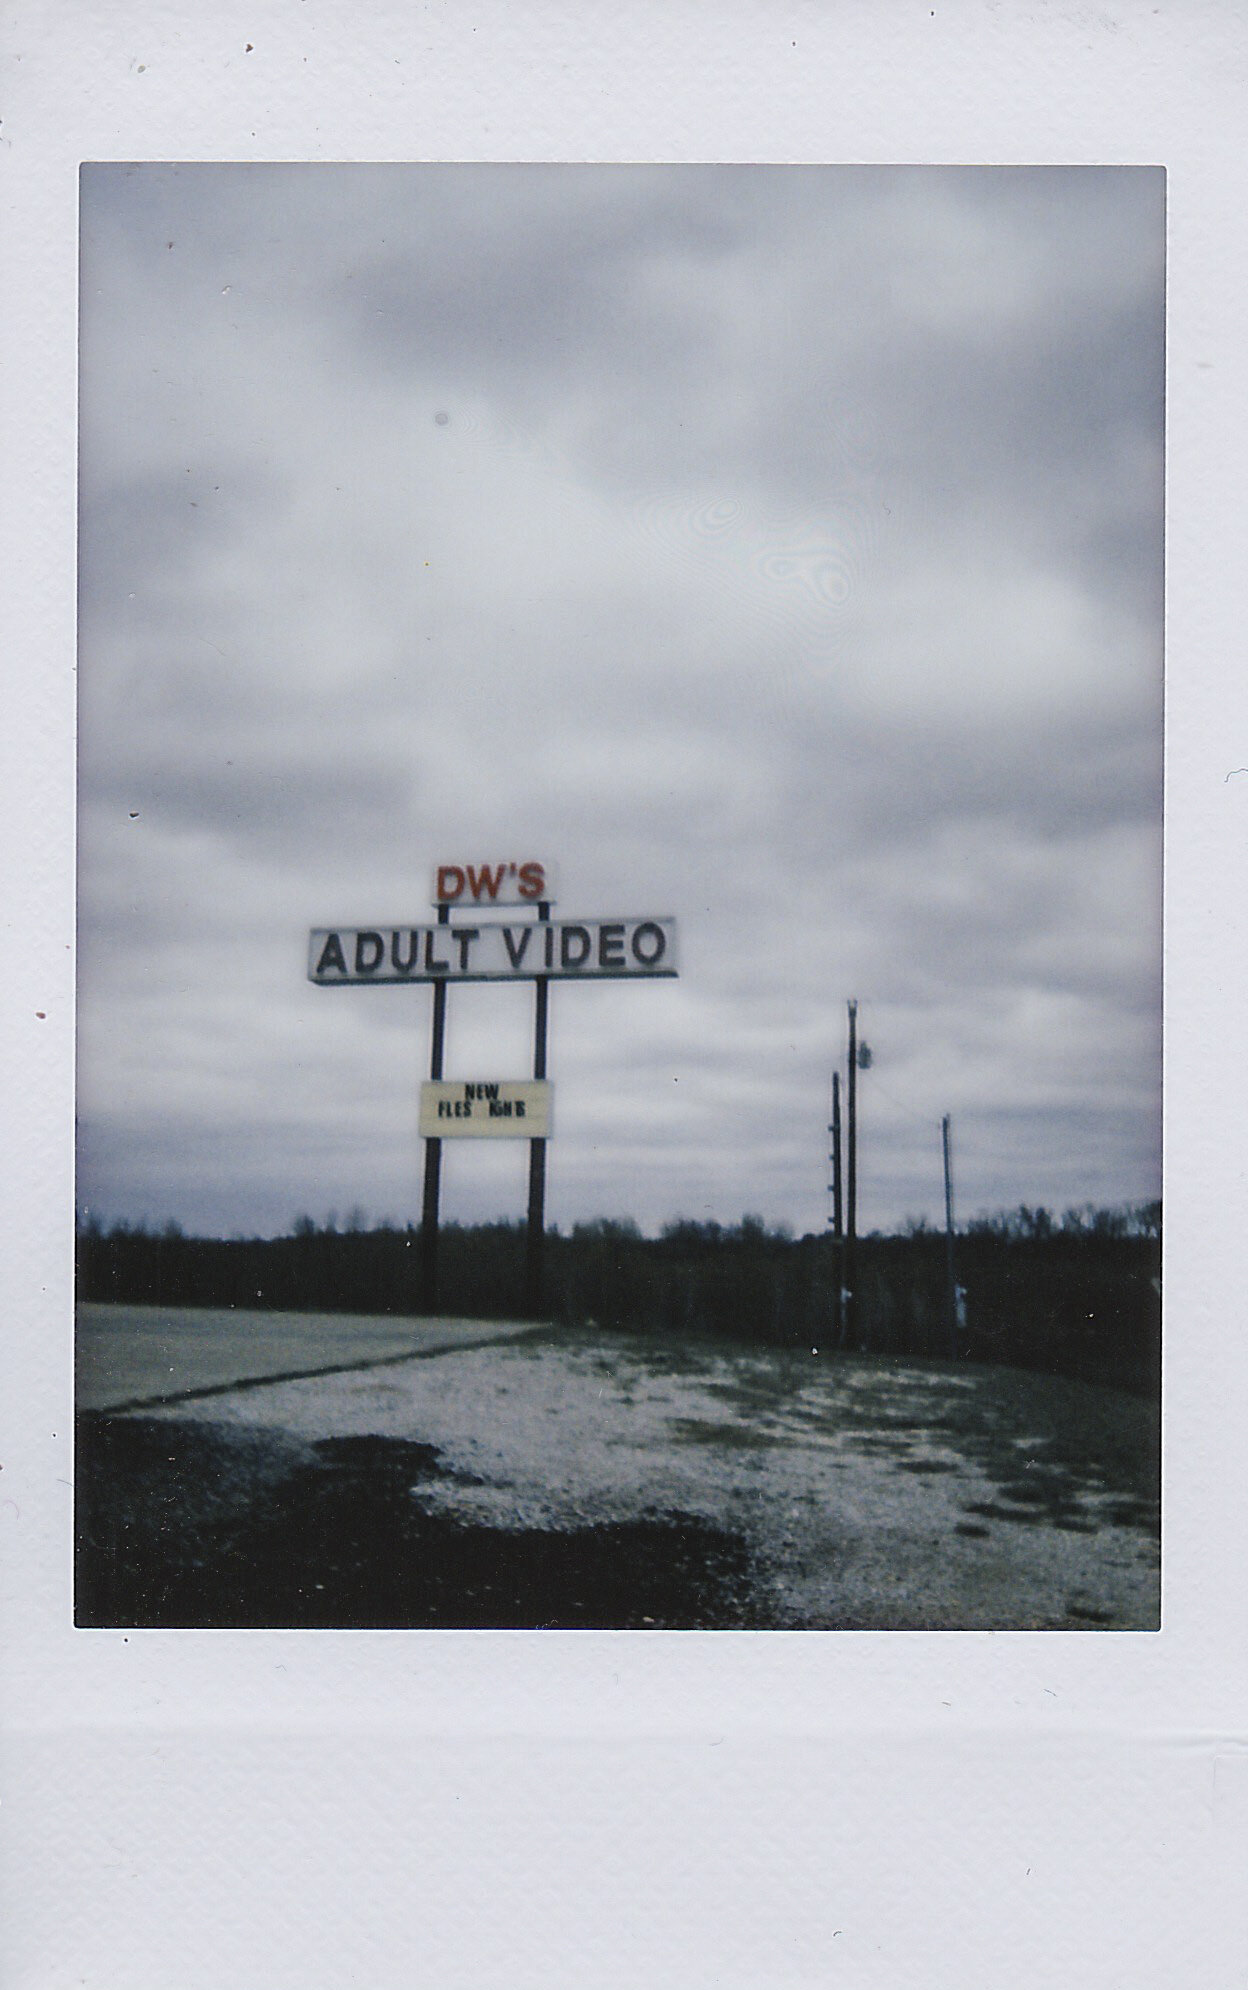 DW's Adult Video (Wichita Falls, TX)